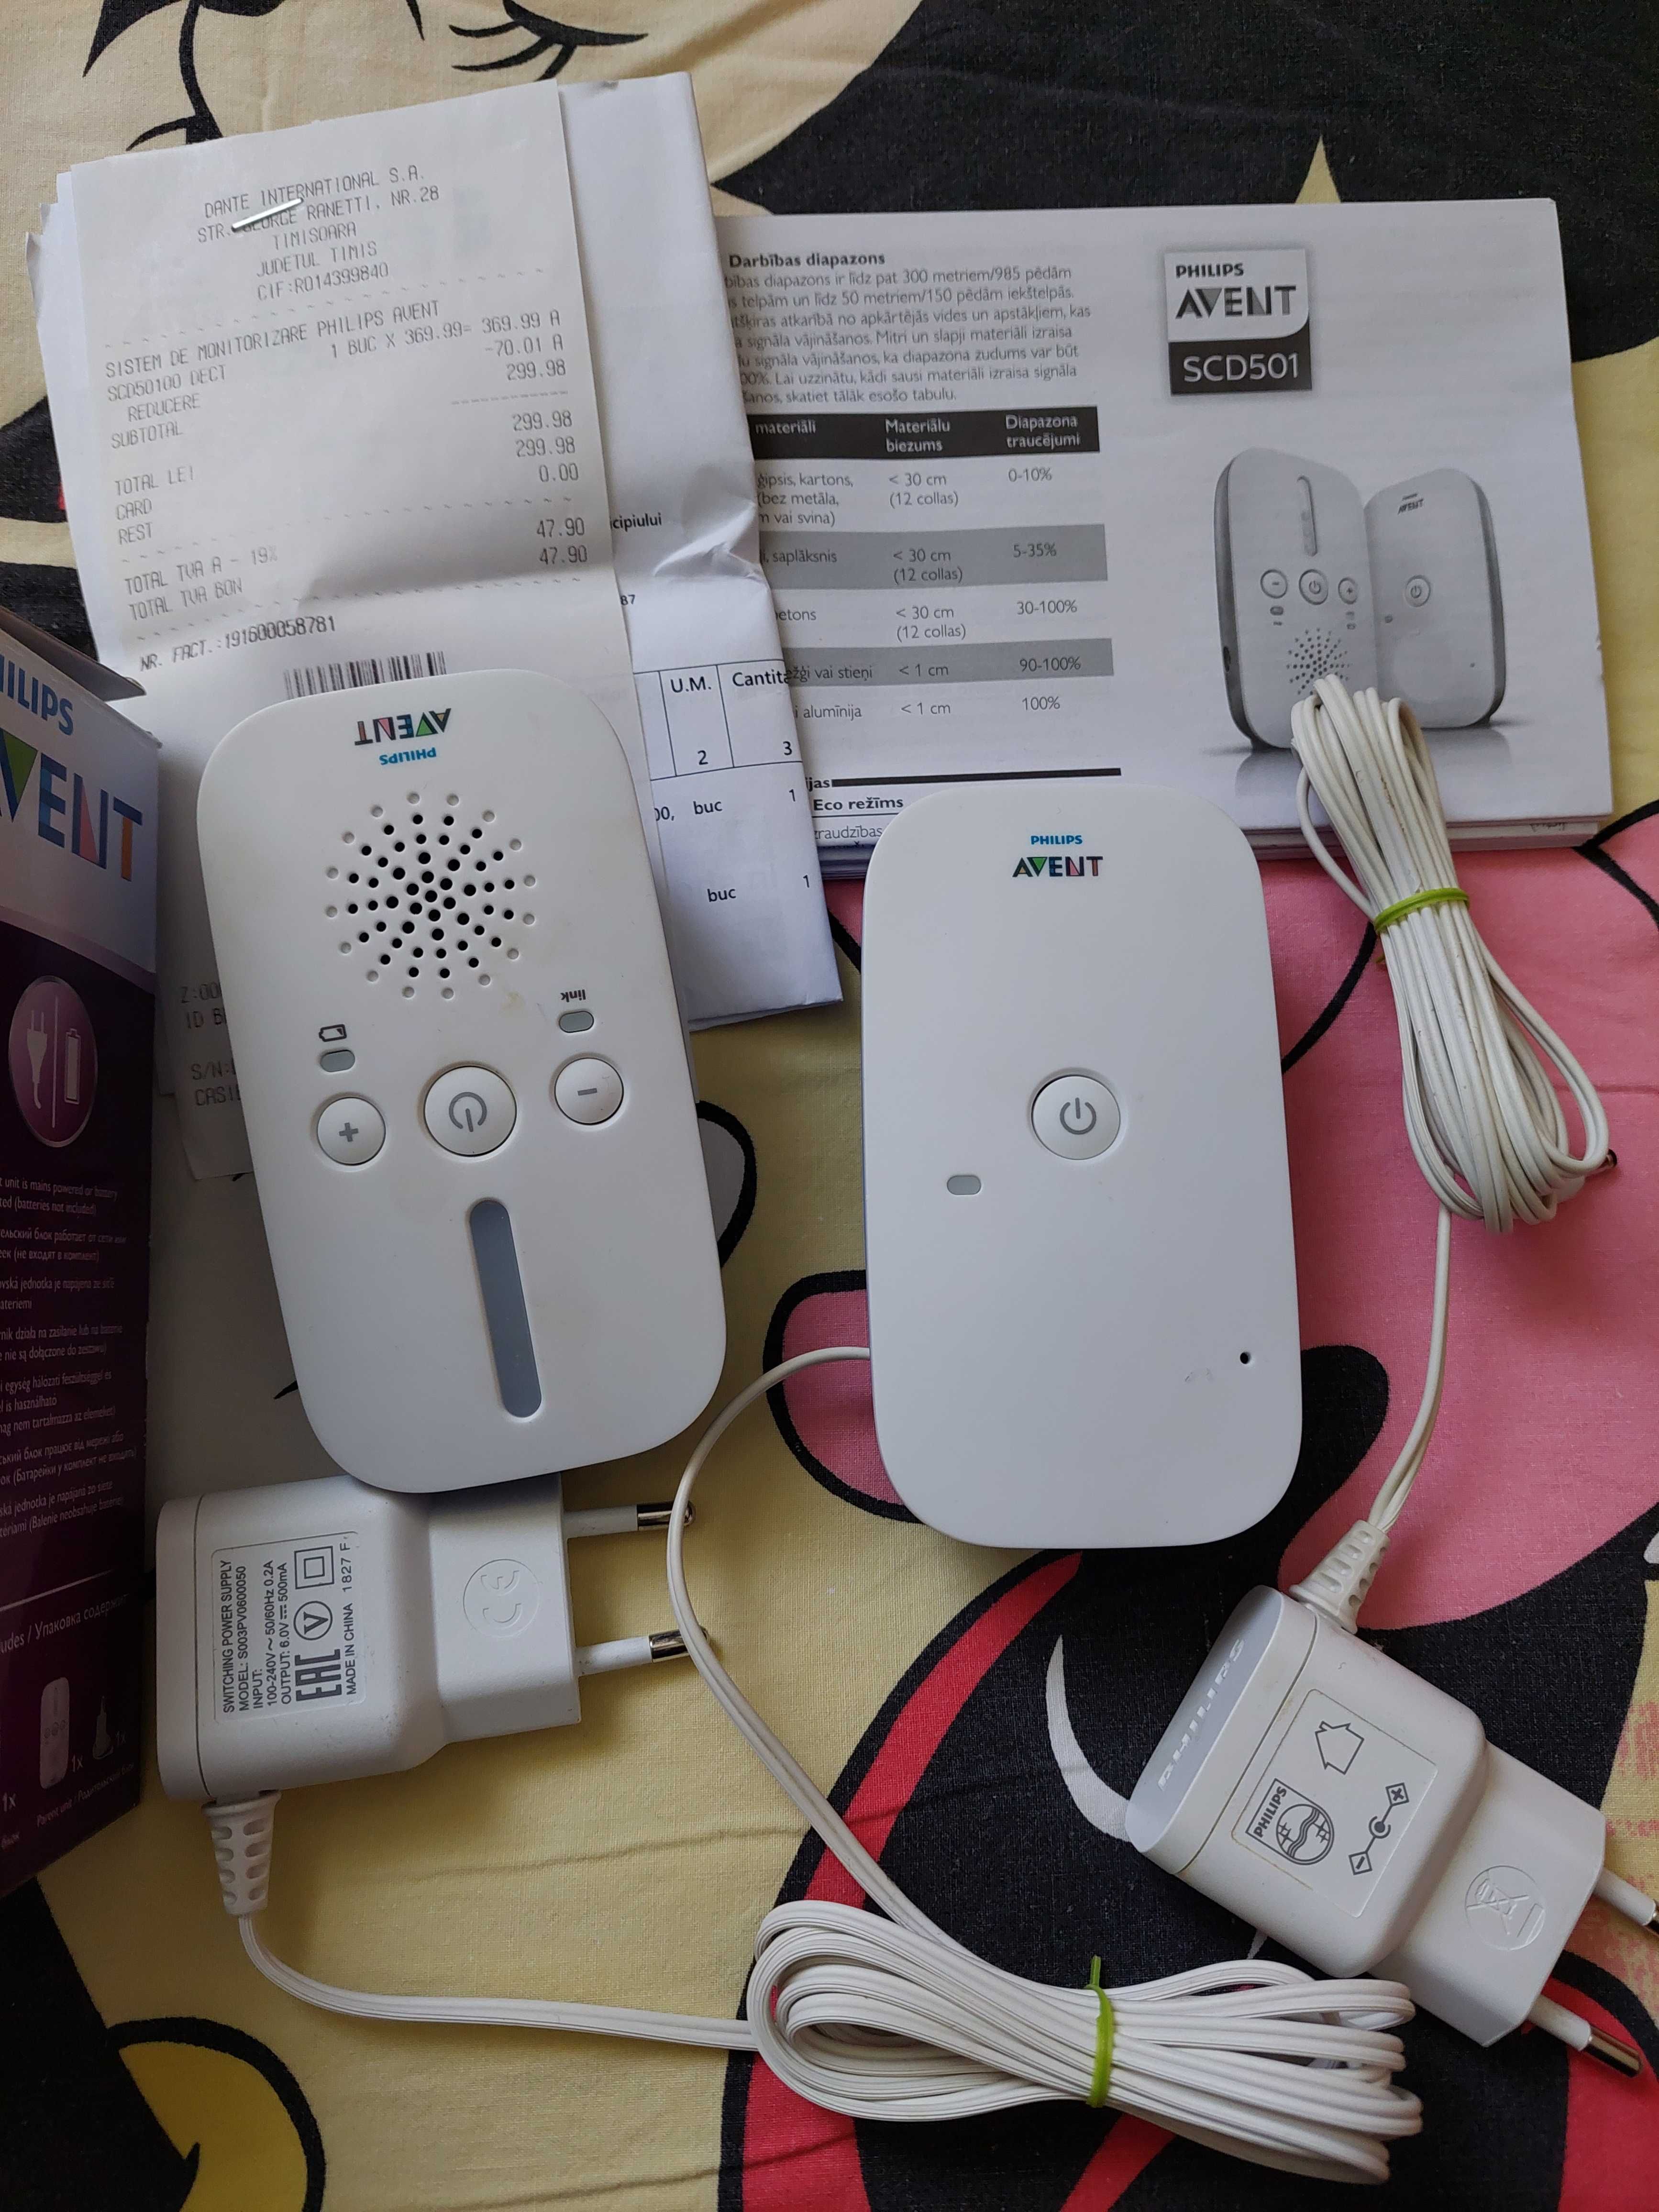 Audio baby Monitor copii seniori Philips-Avent SCD501 Baby Phone